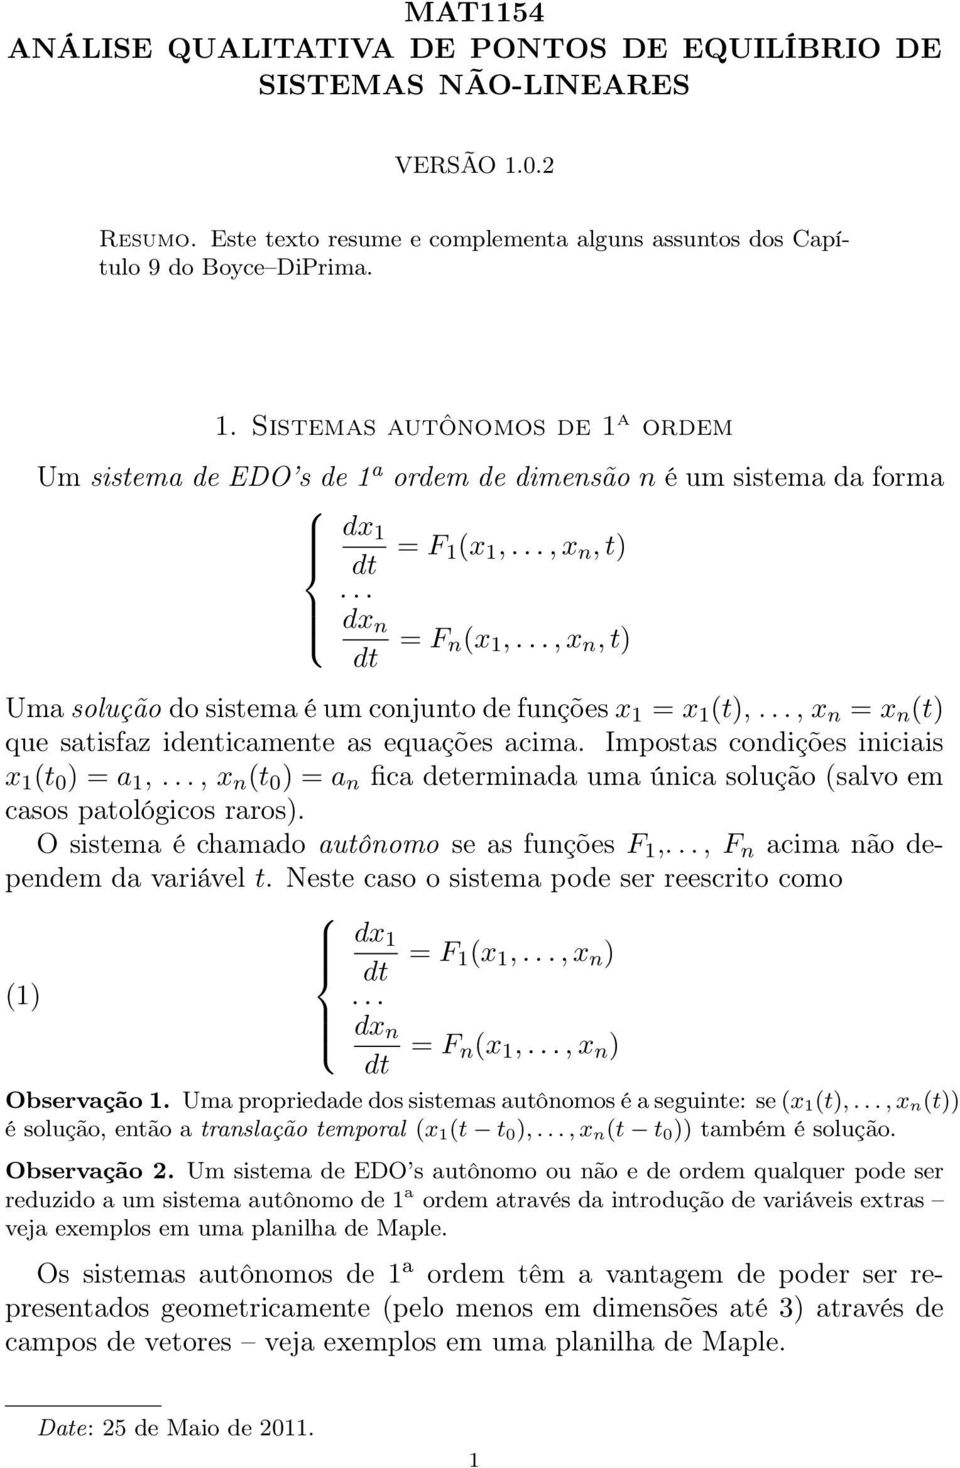 Sistemas autônomos de 1 a ordem Um sistema de EDO s de 1 a ordem de dimensão n é um sistema da forma dx 1 = F 1(x 1,..., x n, t)... dx n = F n (x 1,.